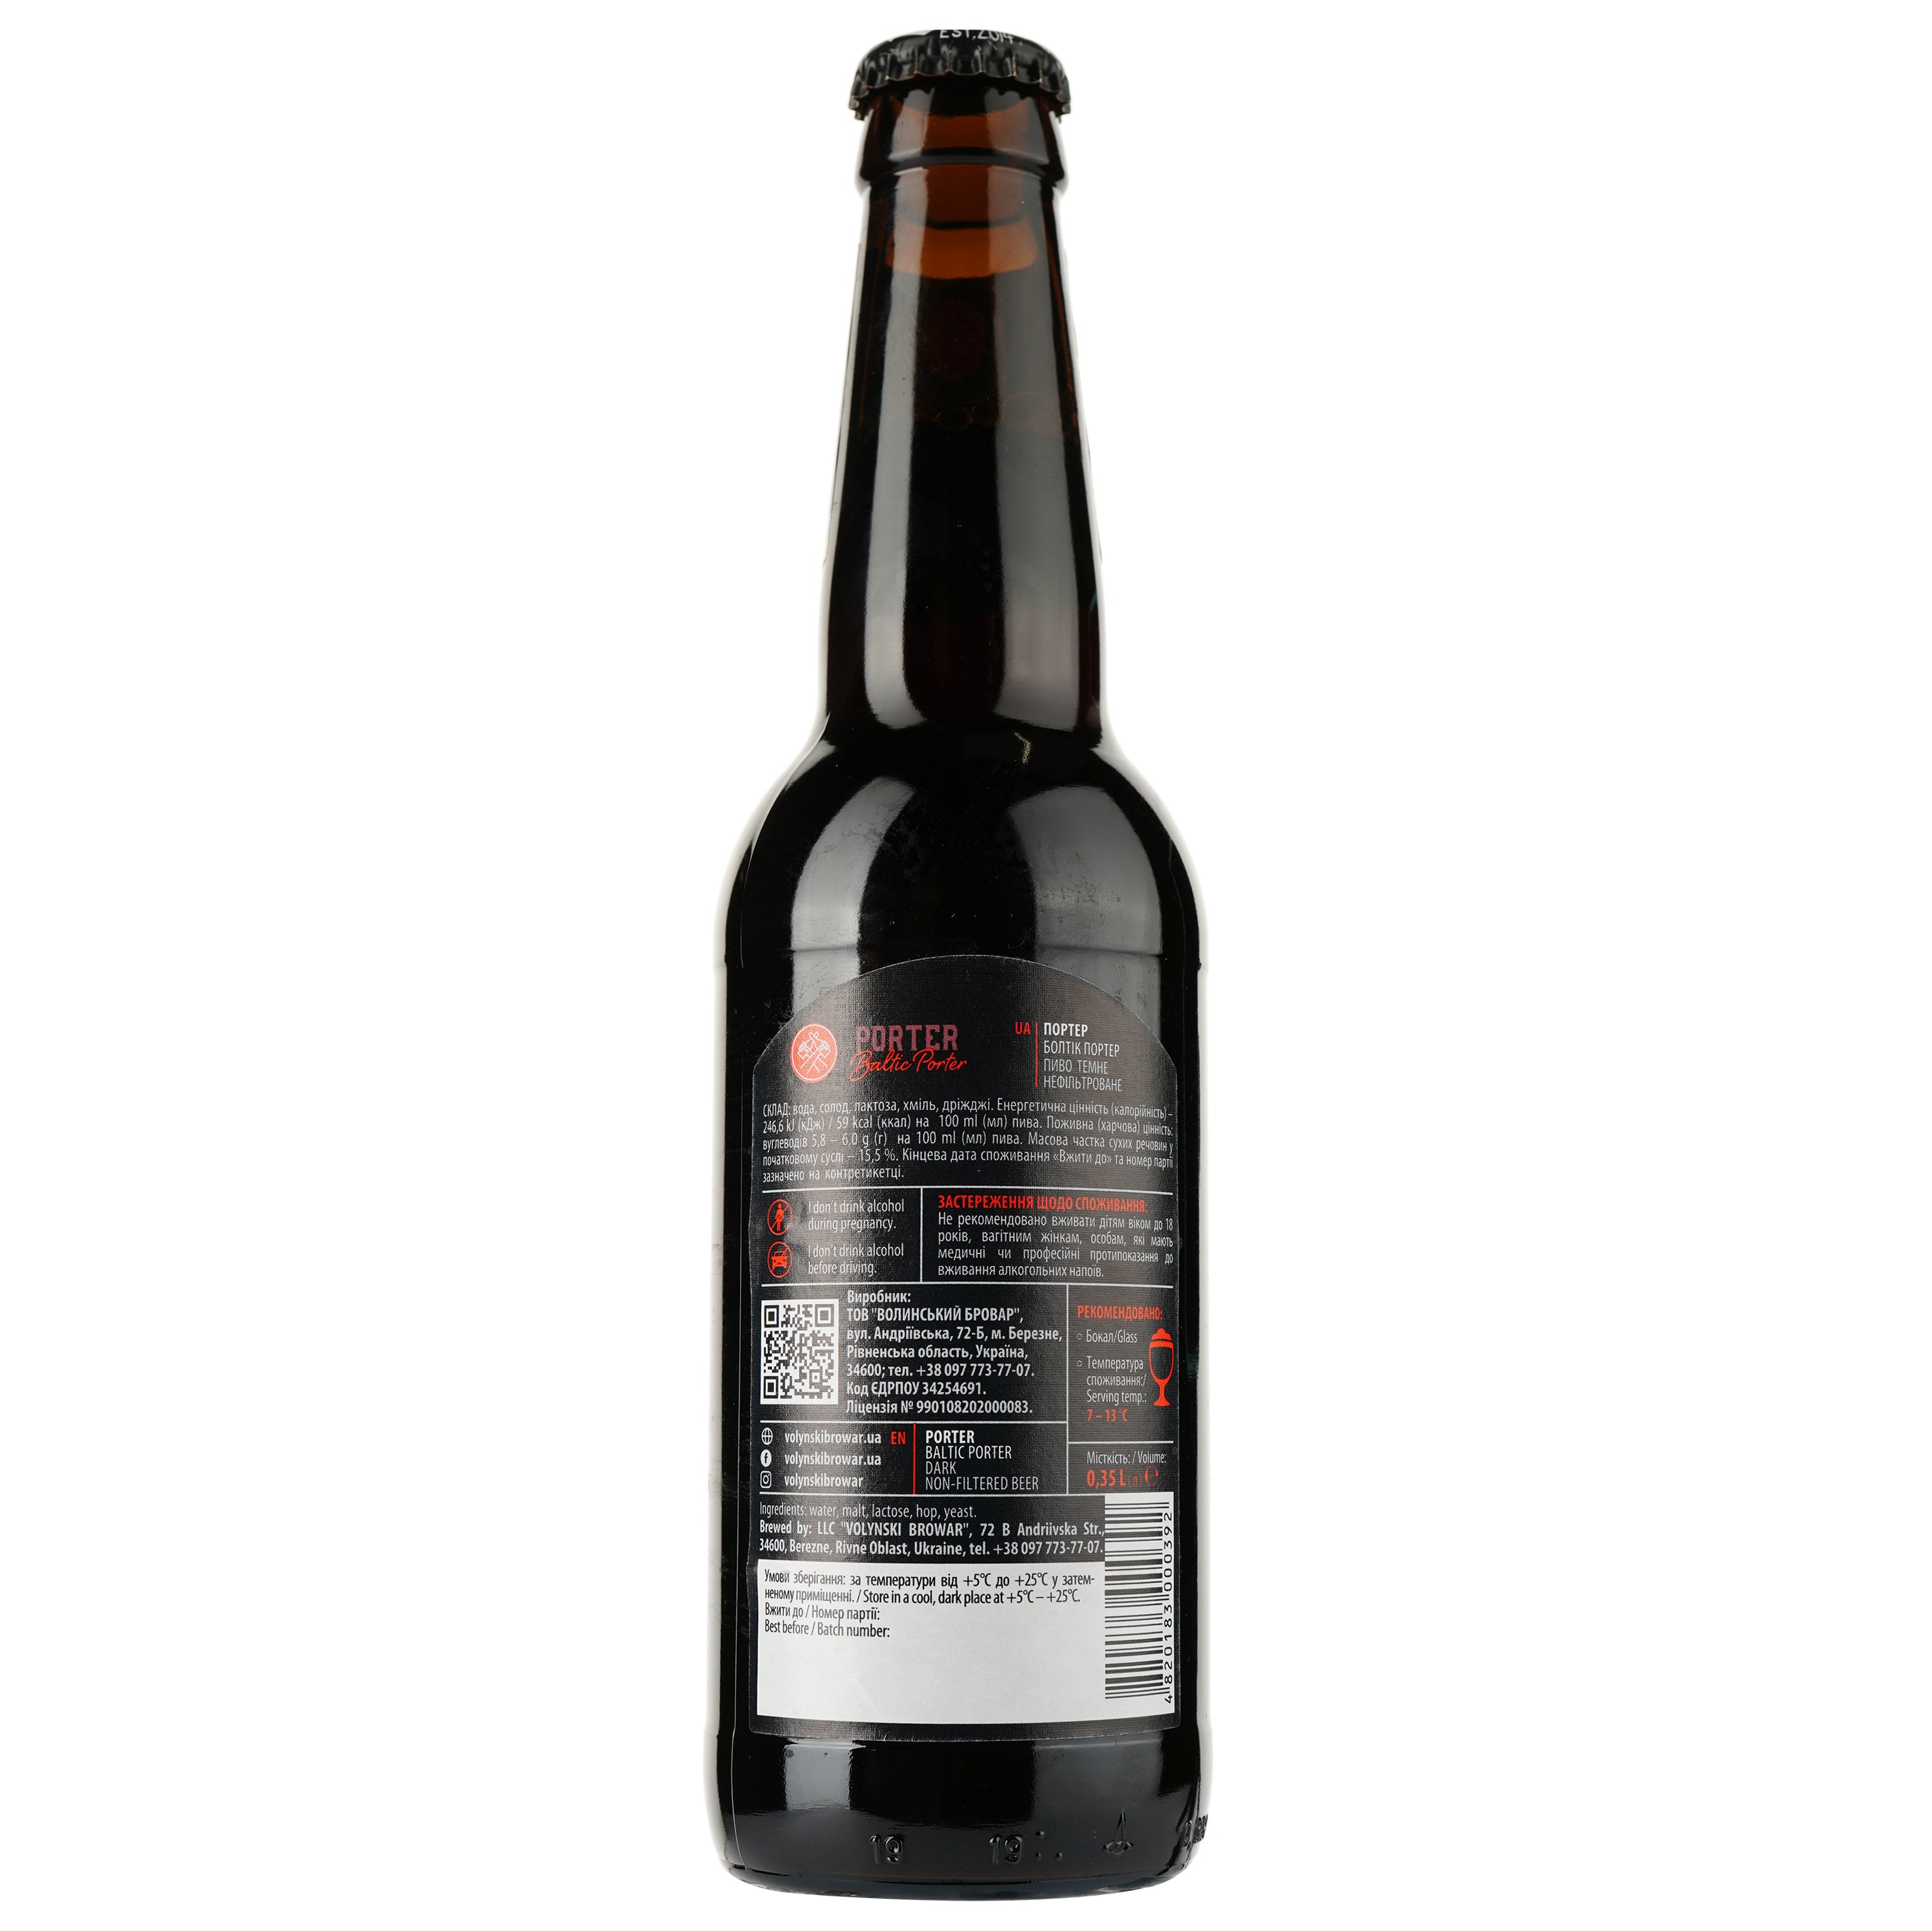 Пиво Volynski Browar Porter, темное, нефильтрованное, 5,8%, 0,35 л - фото 2